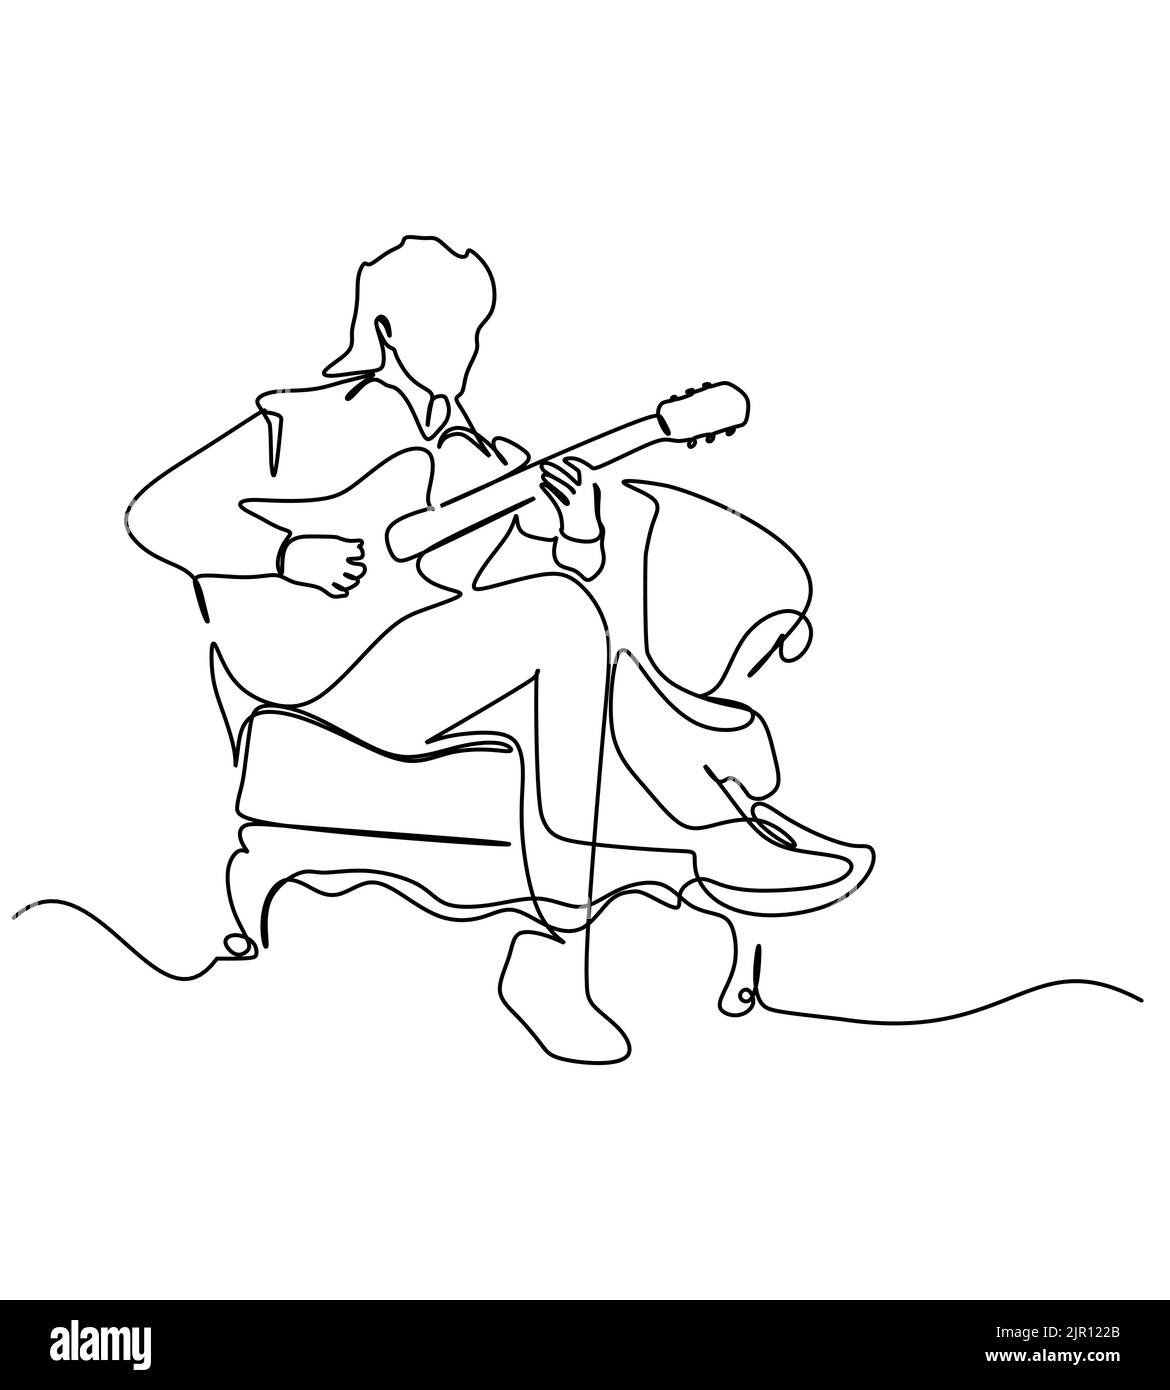 Un guitariste mâle joue un instrument de musique de guitare tout en étant assis sur la chaise. Mise en plan continue sur une seule ligne. Illustration vectorielle pour le concept musical Illustration de Vecteur